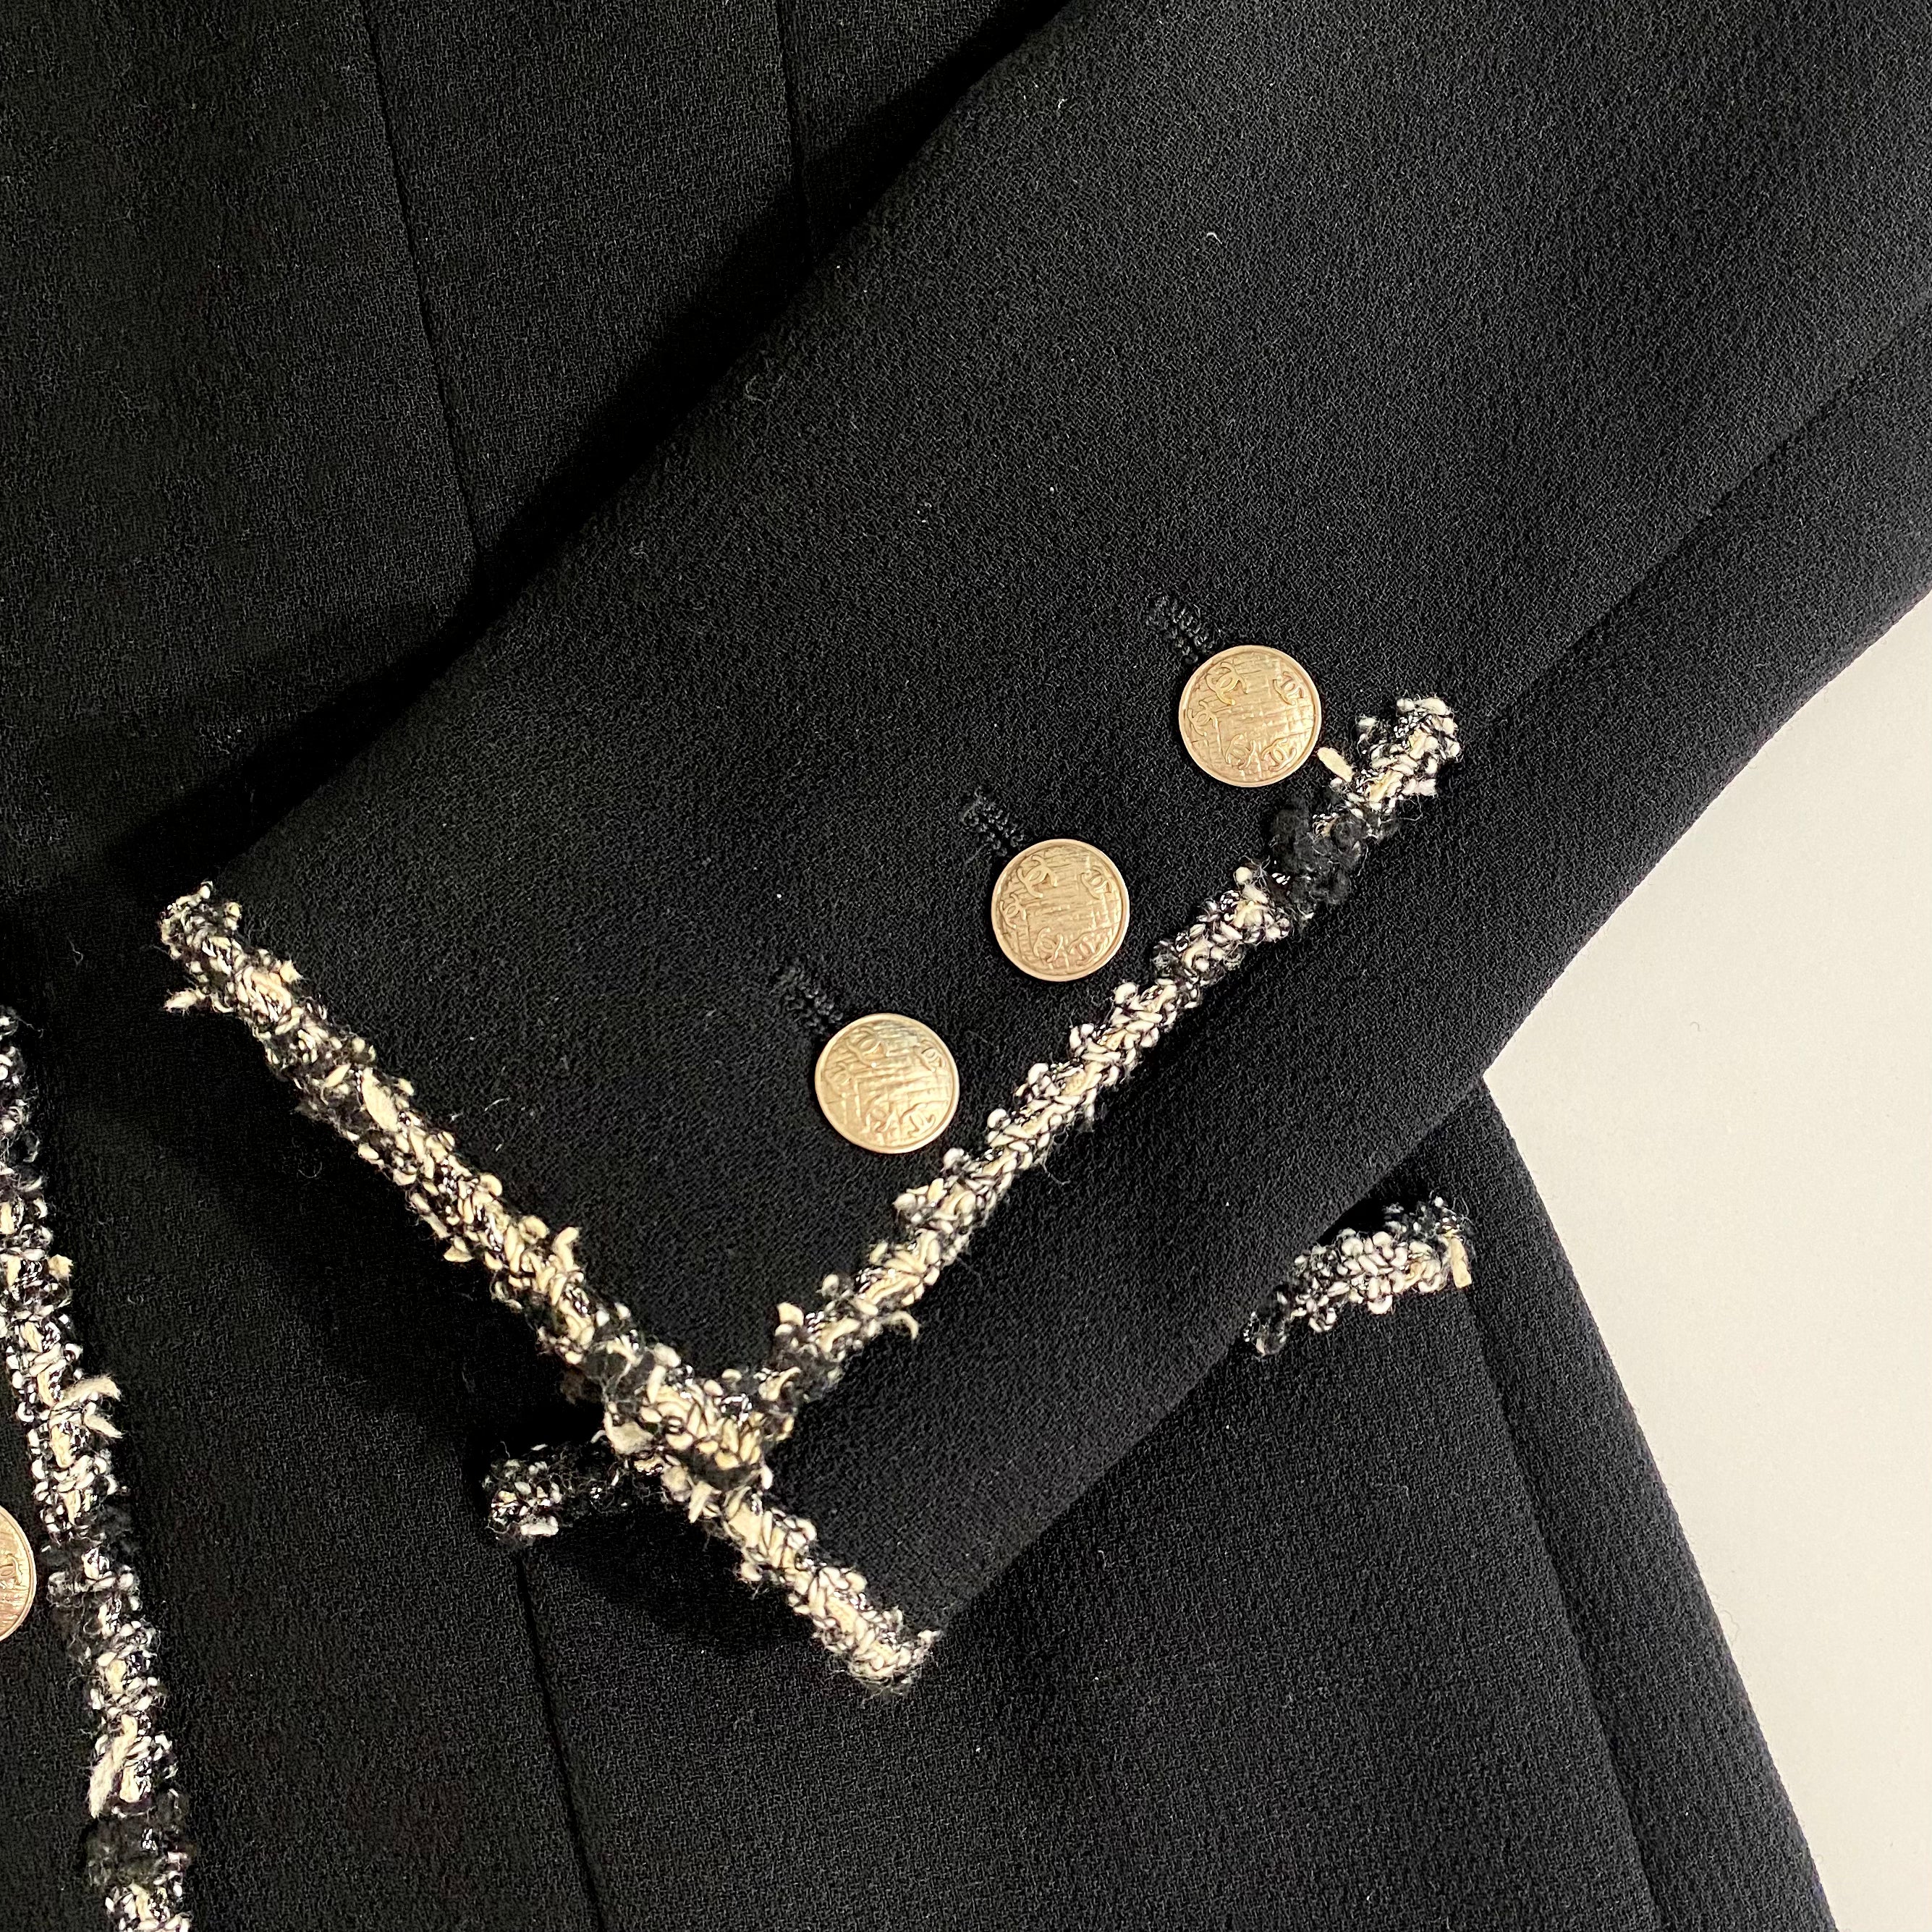 Chanel “The Devil Wears Prada” Jacket